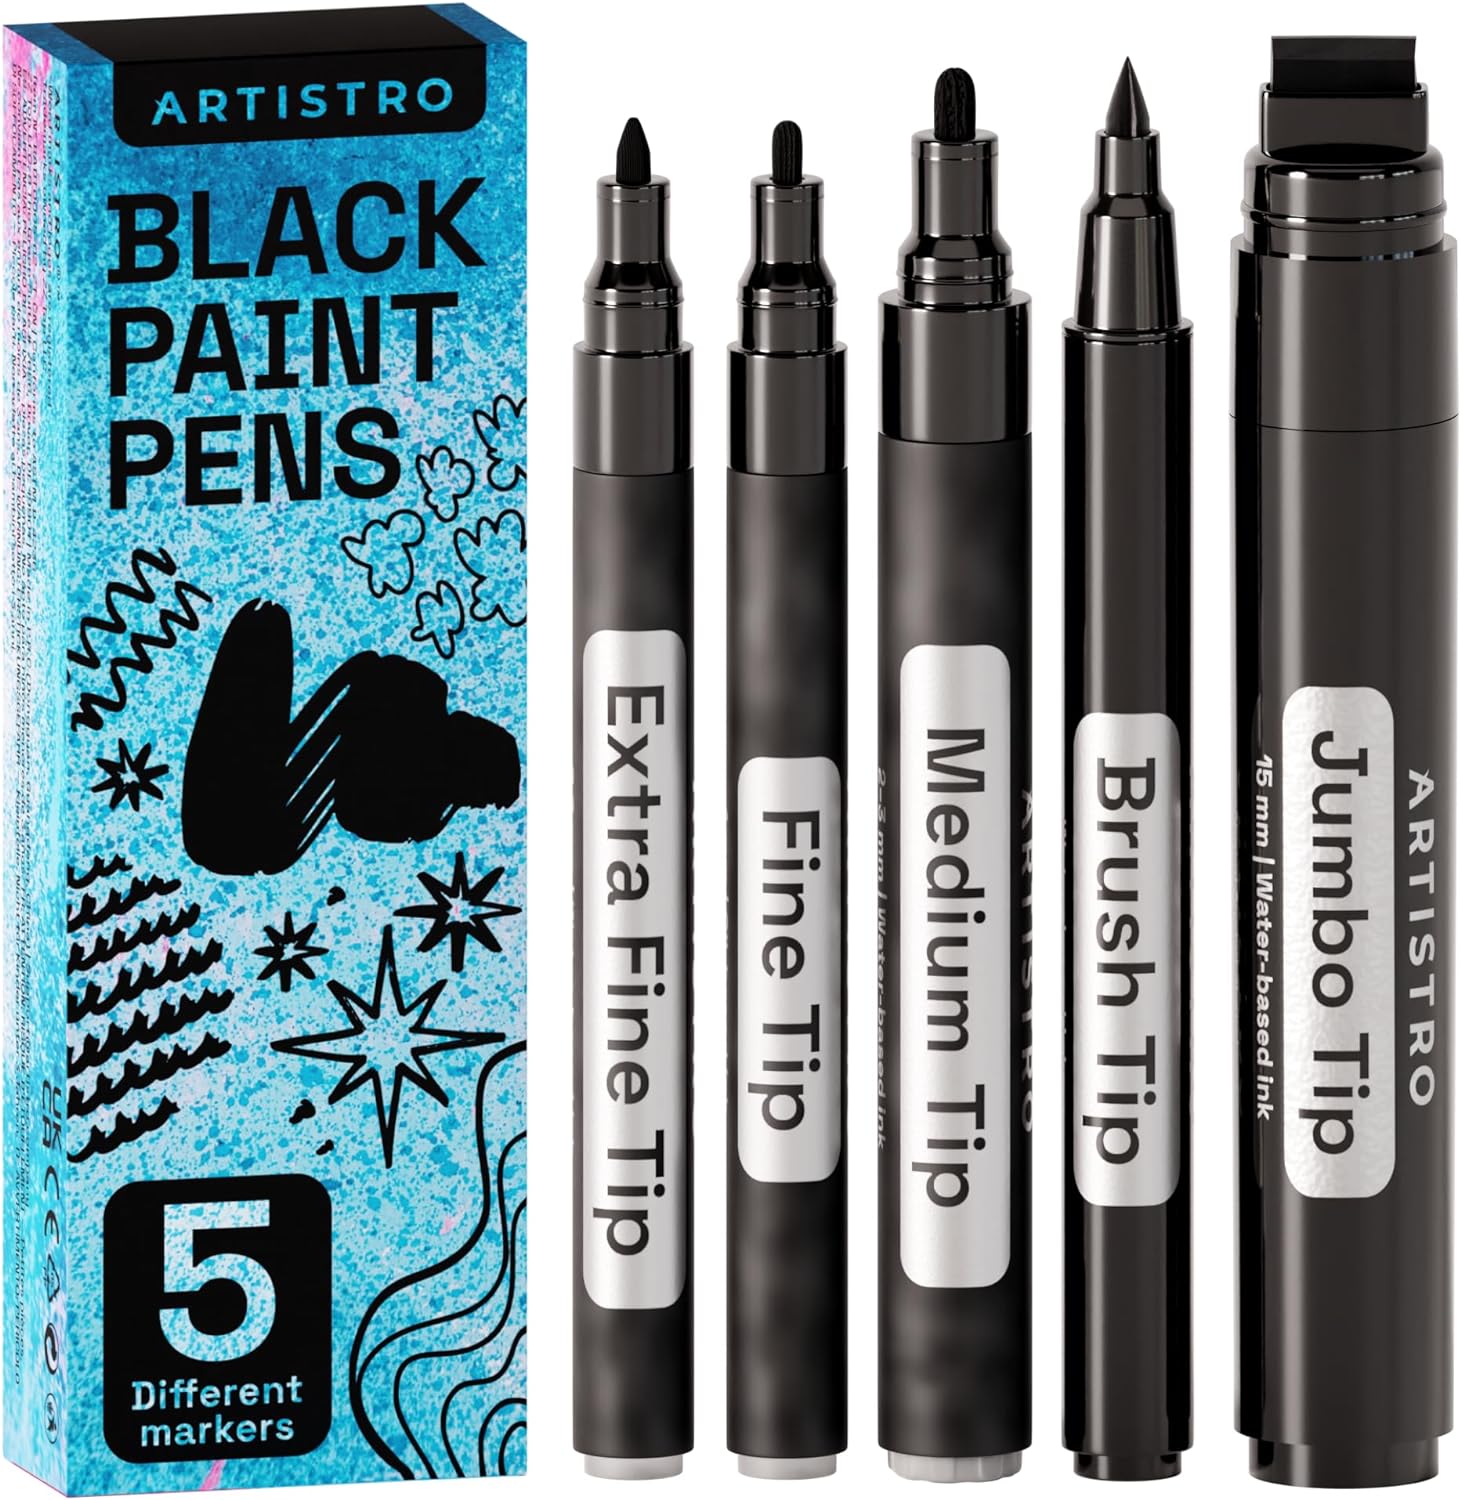 Dual Tip Paint Pens Paint Markers, 18 Colors Oil-Based Paint Marker